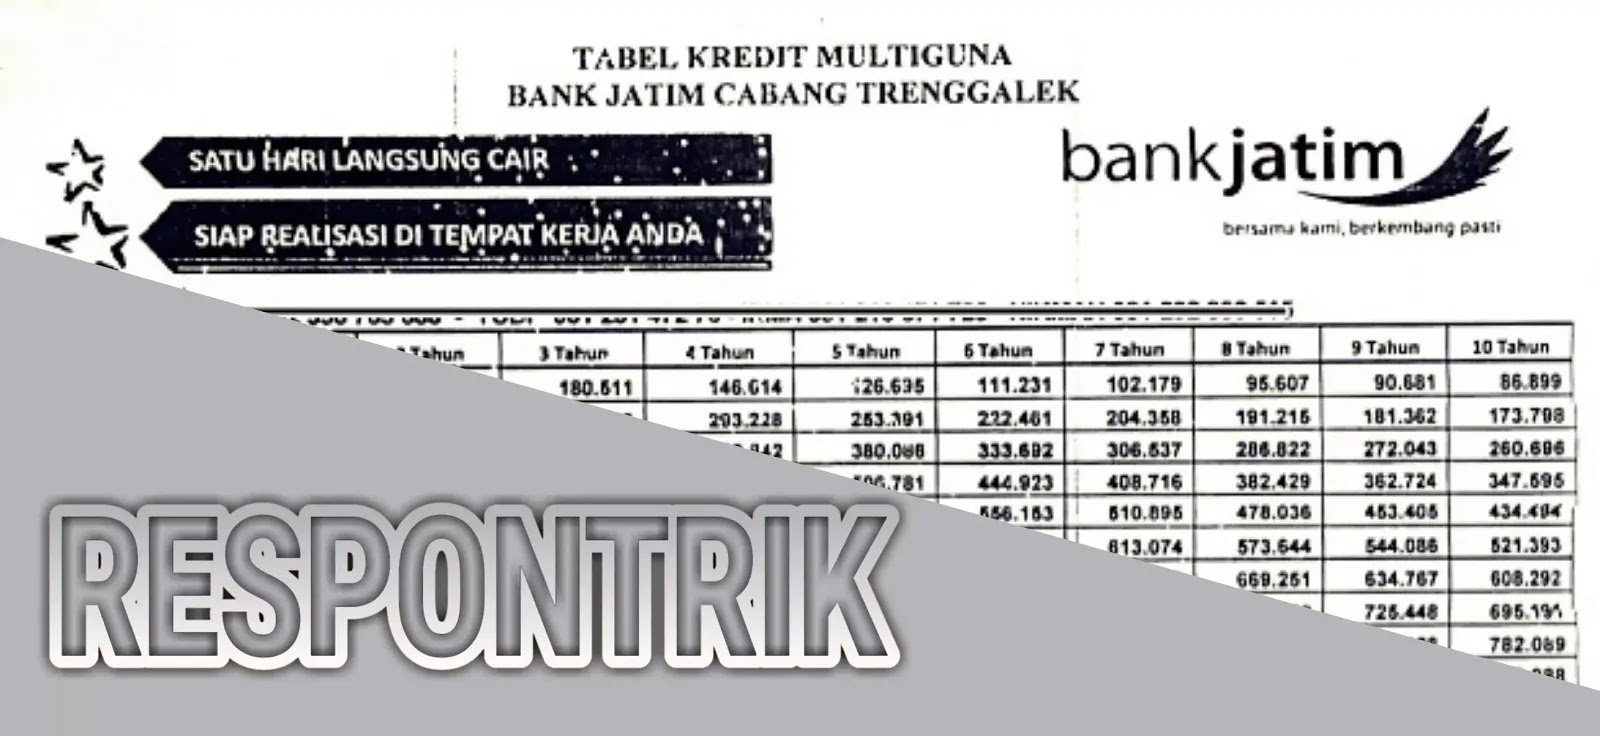 Tabel Pinjaman Bank Jatim Untuk Pns Kredit Multiguna 2019